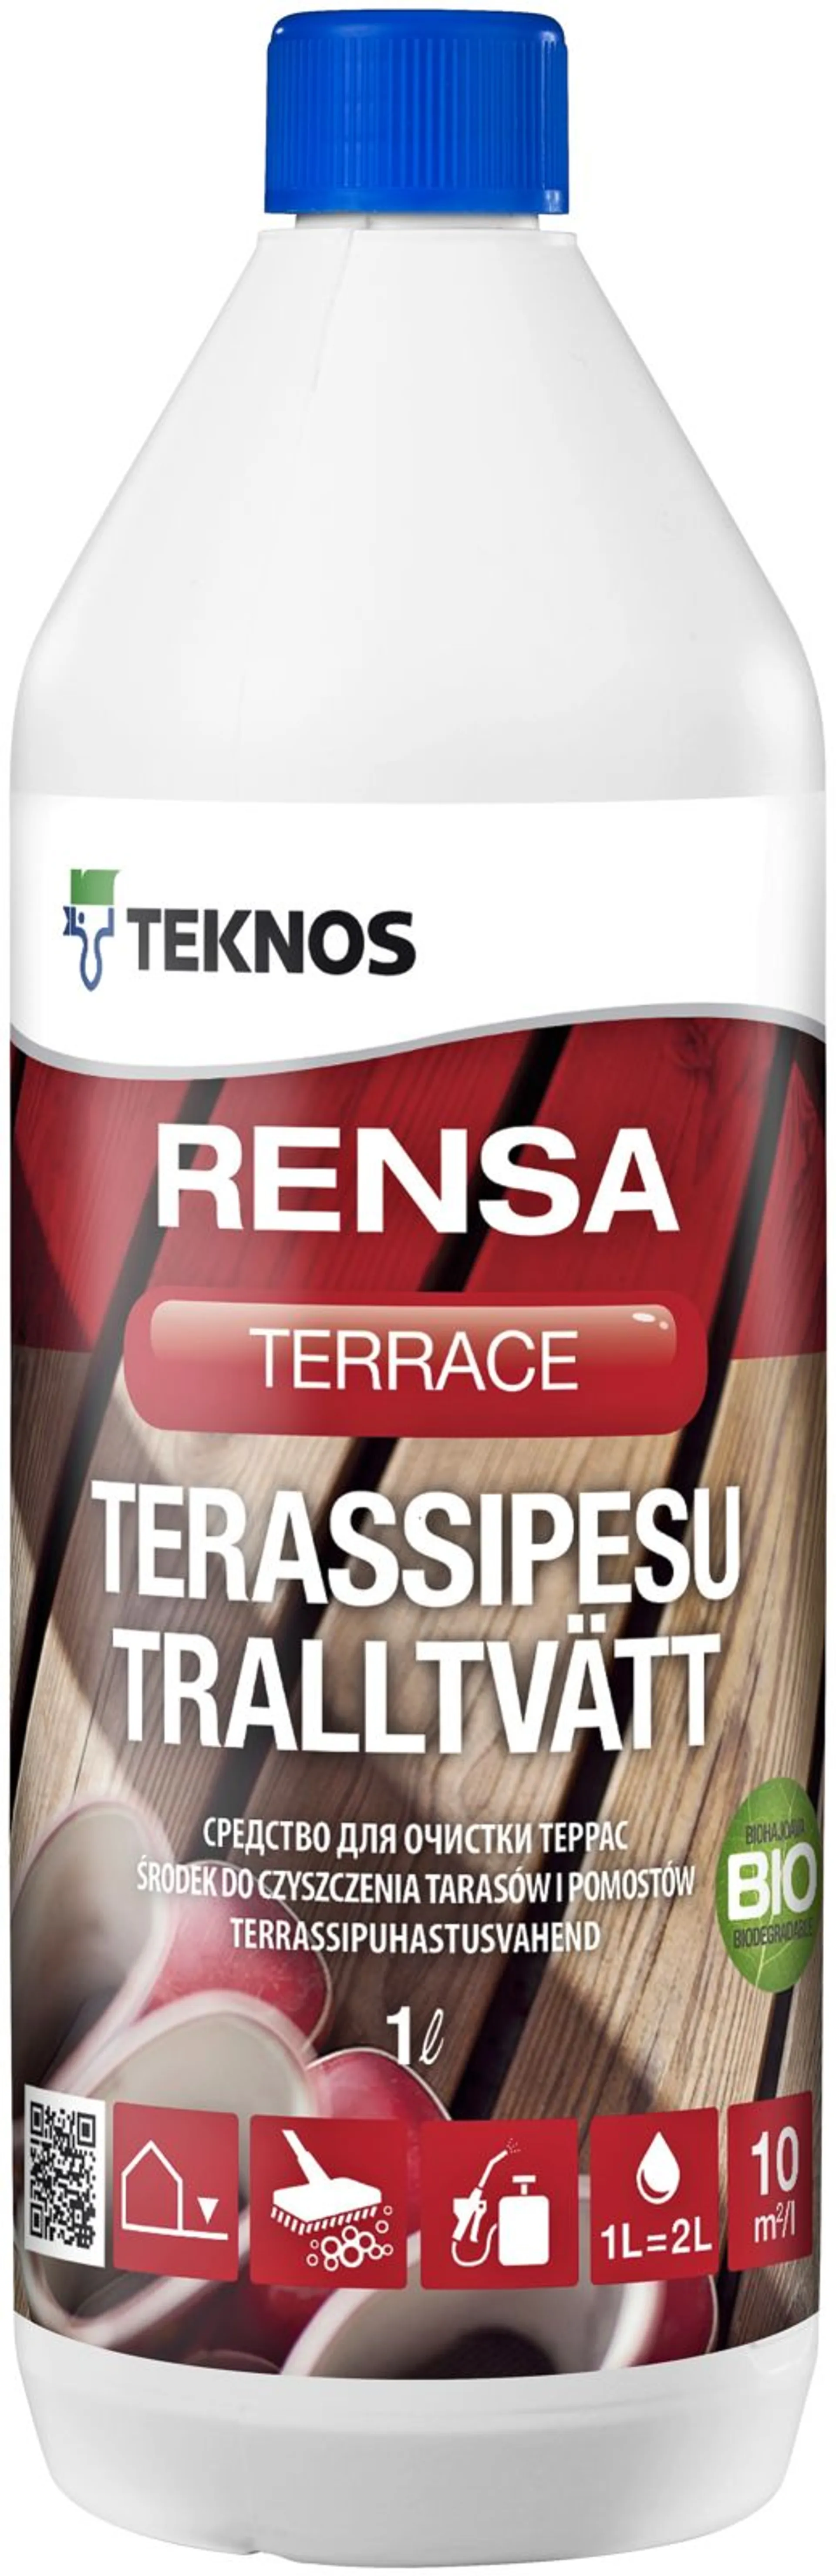 Teknos terassipesu Rensa Terrace 1 l